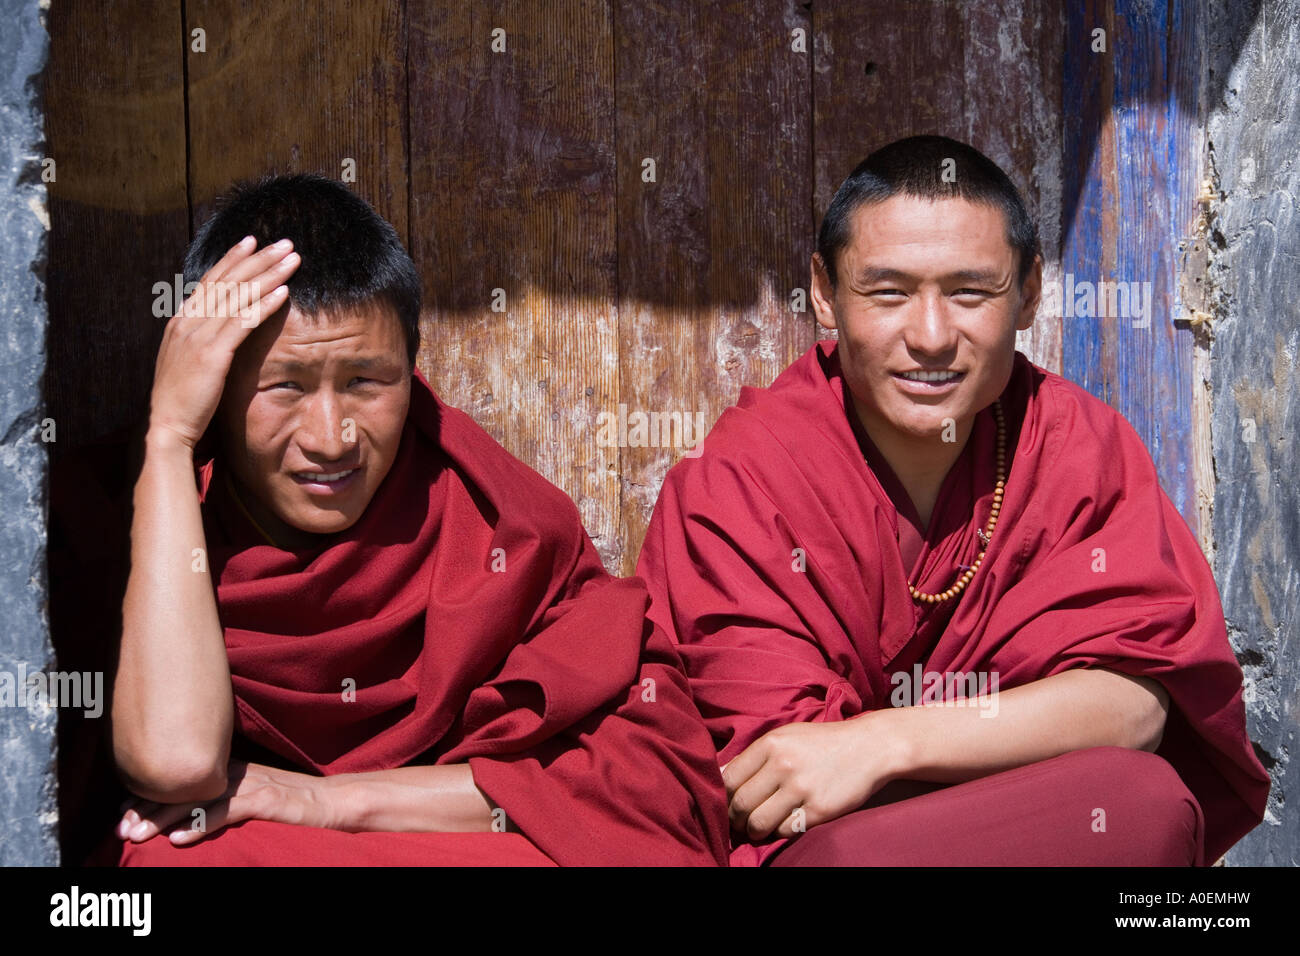 Les moines se détendre dans un porte à monastère de Ganden à 16200ft dans la région autonome du Tibet en Chine Banque D'Images